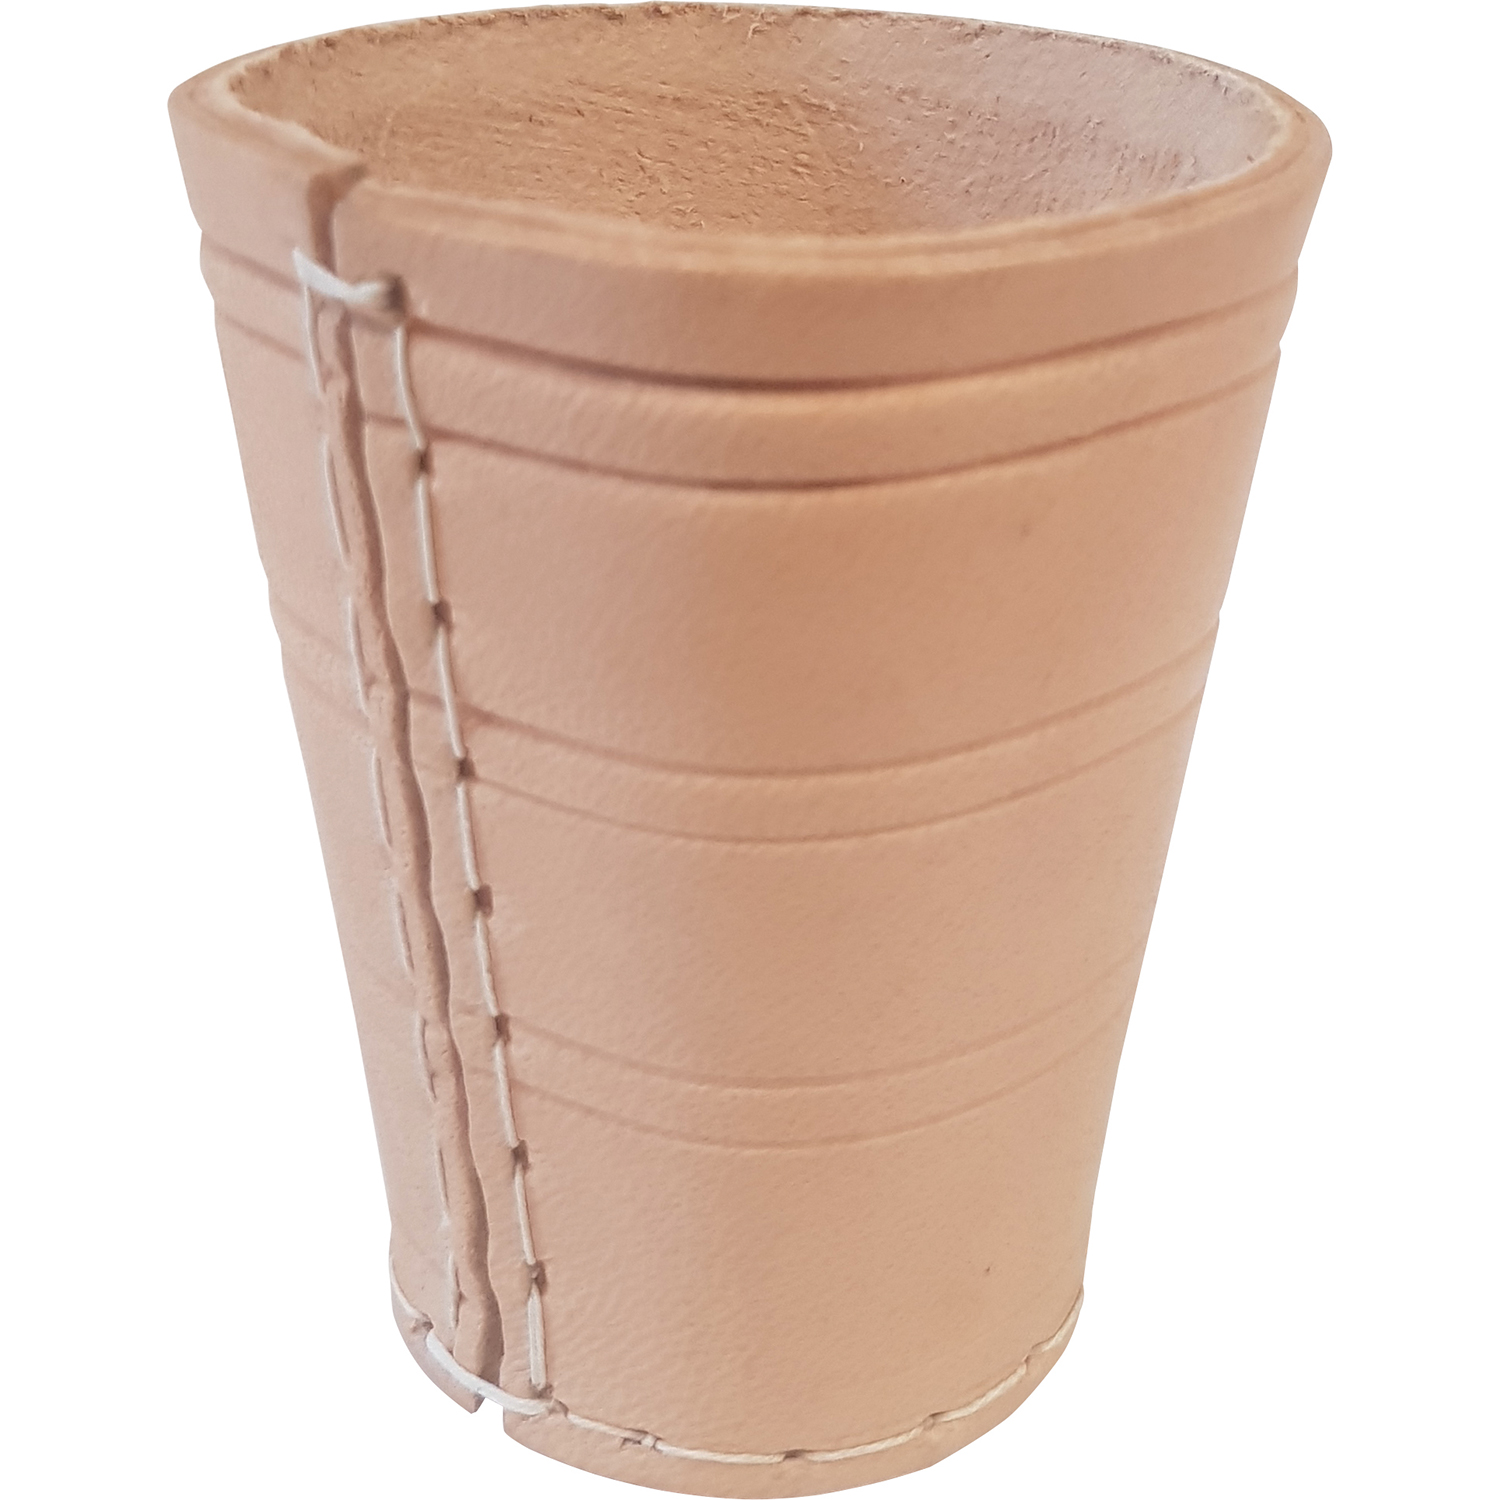 Dice cup 10cm leather